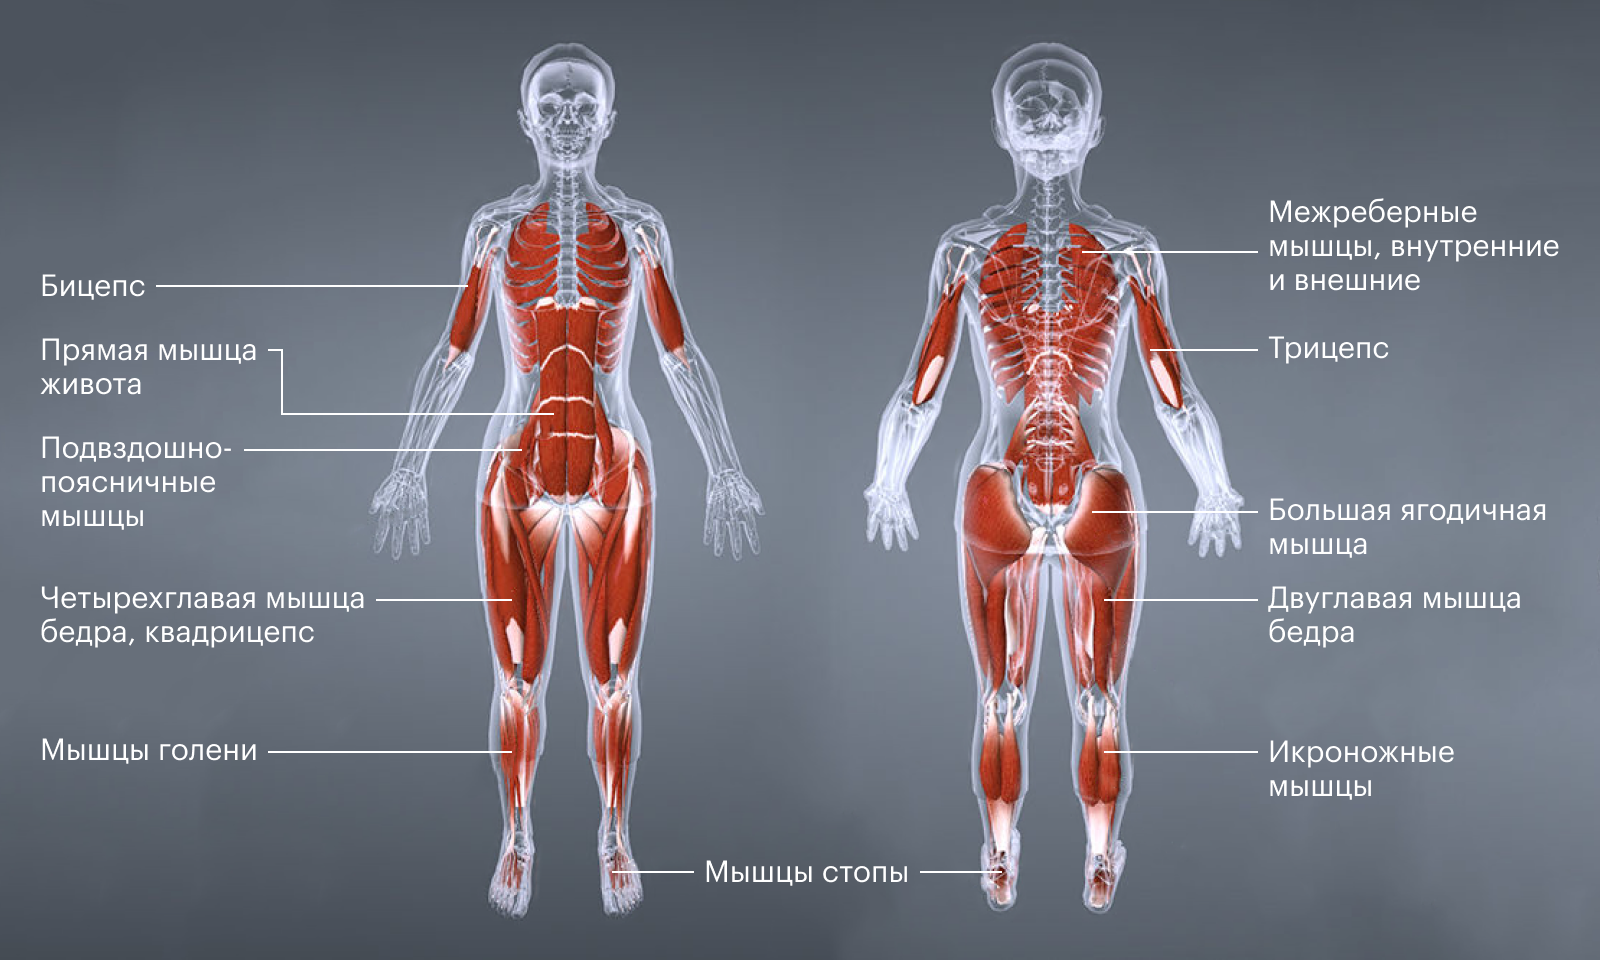 Какая жидкость в мышцах. Какие мышцы работают при беге. Какие мышцы задействованы при беге. Группы мышц при ходьбе. Мышцы которые участвуют в беге.